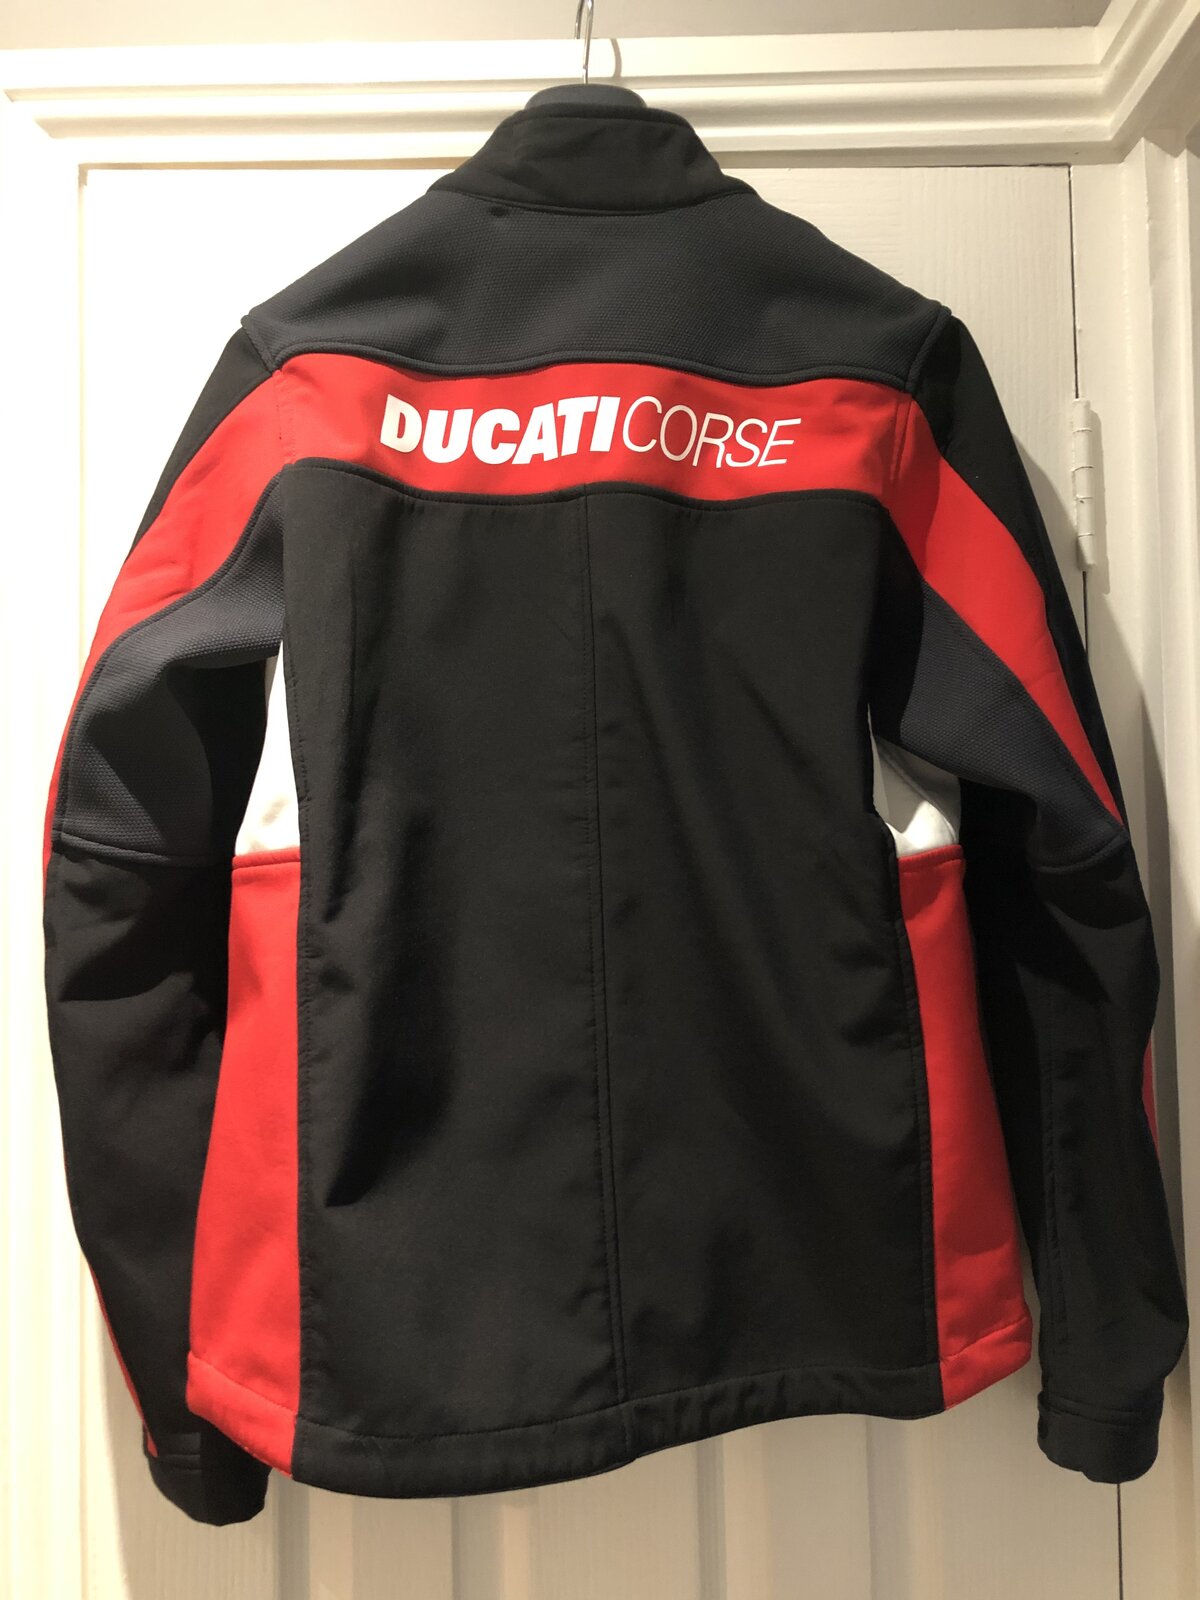 For Sale - Brand New Ducati Corse Casual Jacket | Ducati Forum